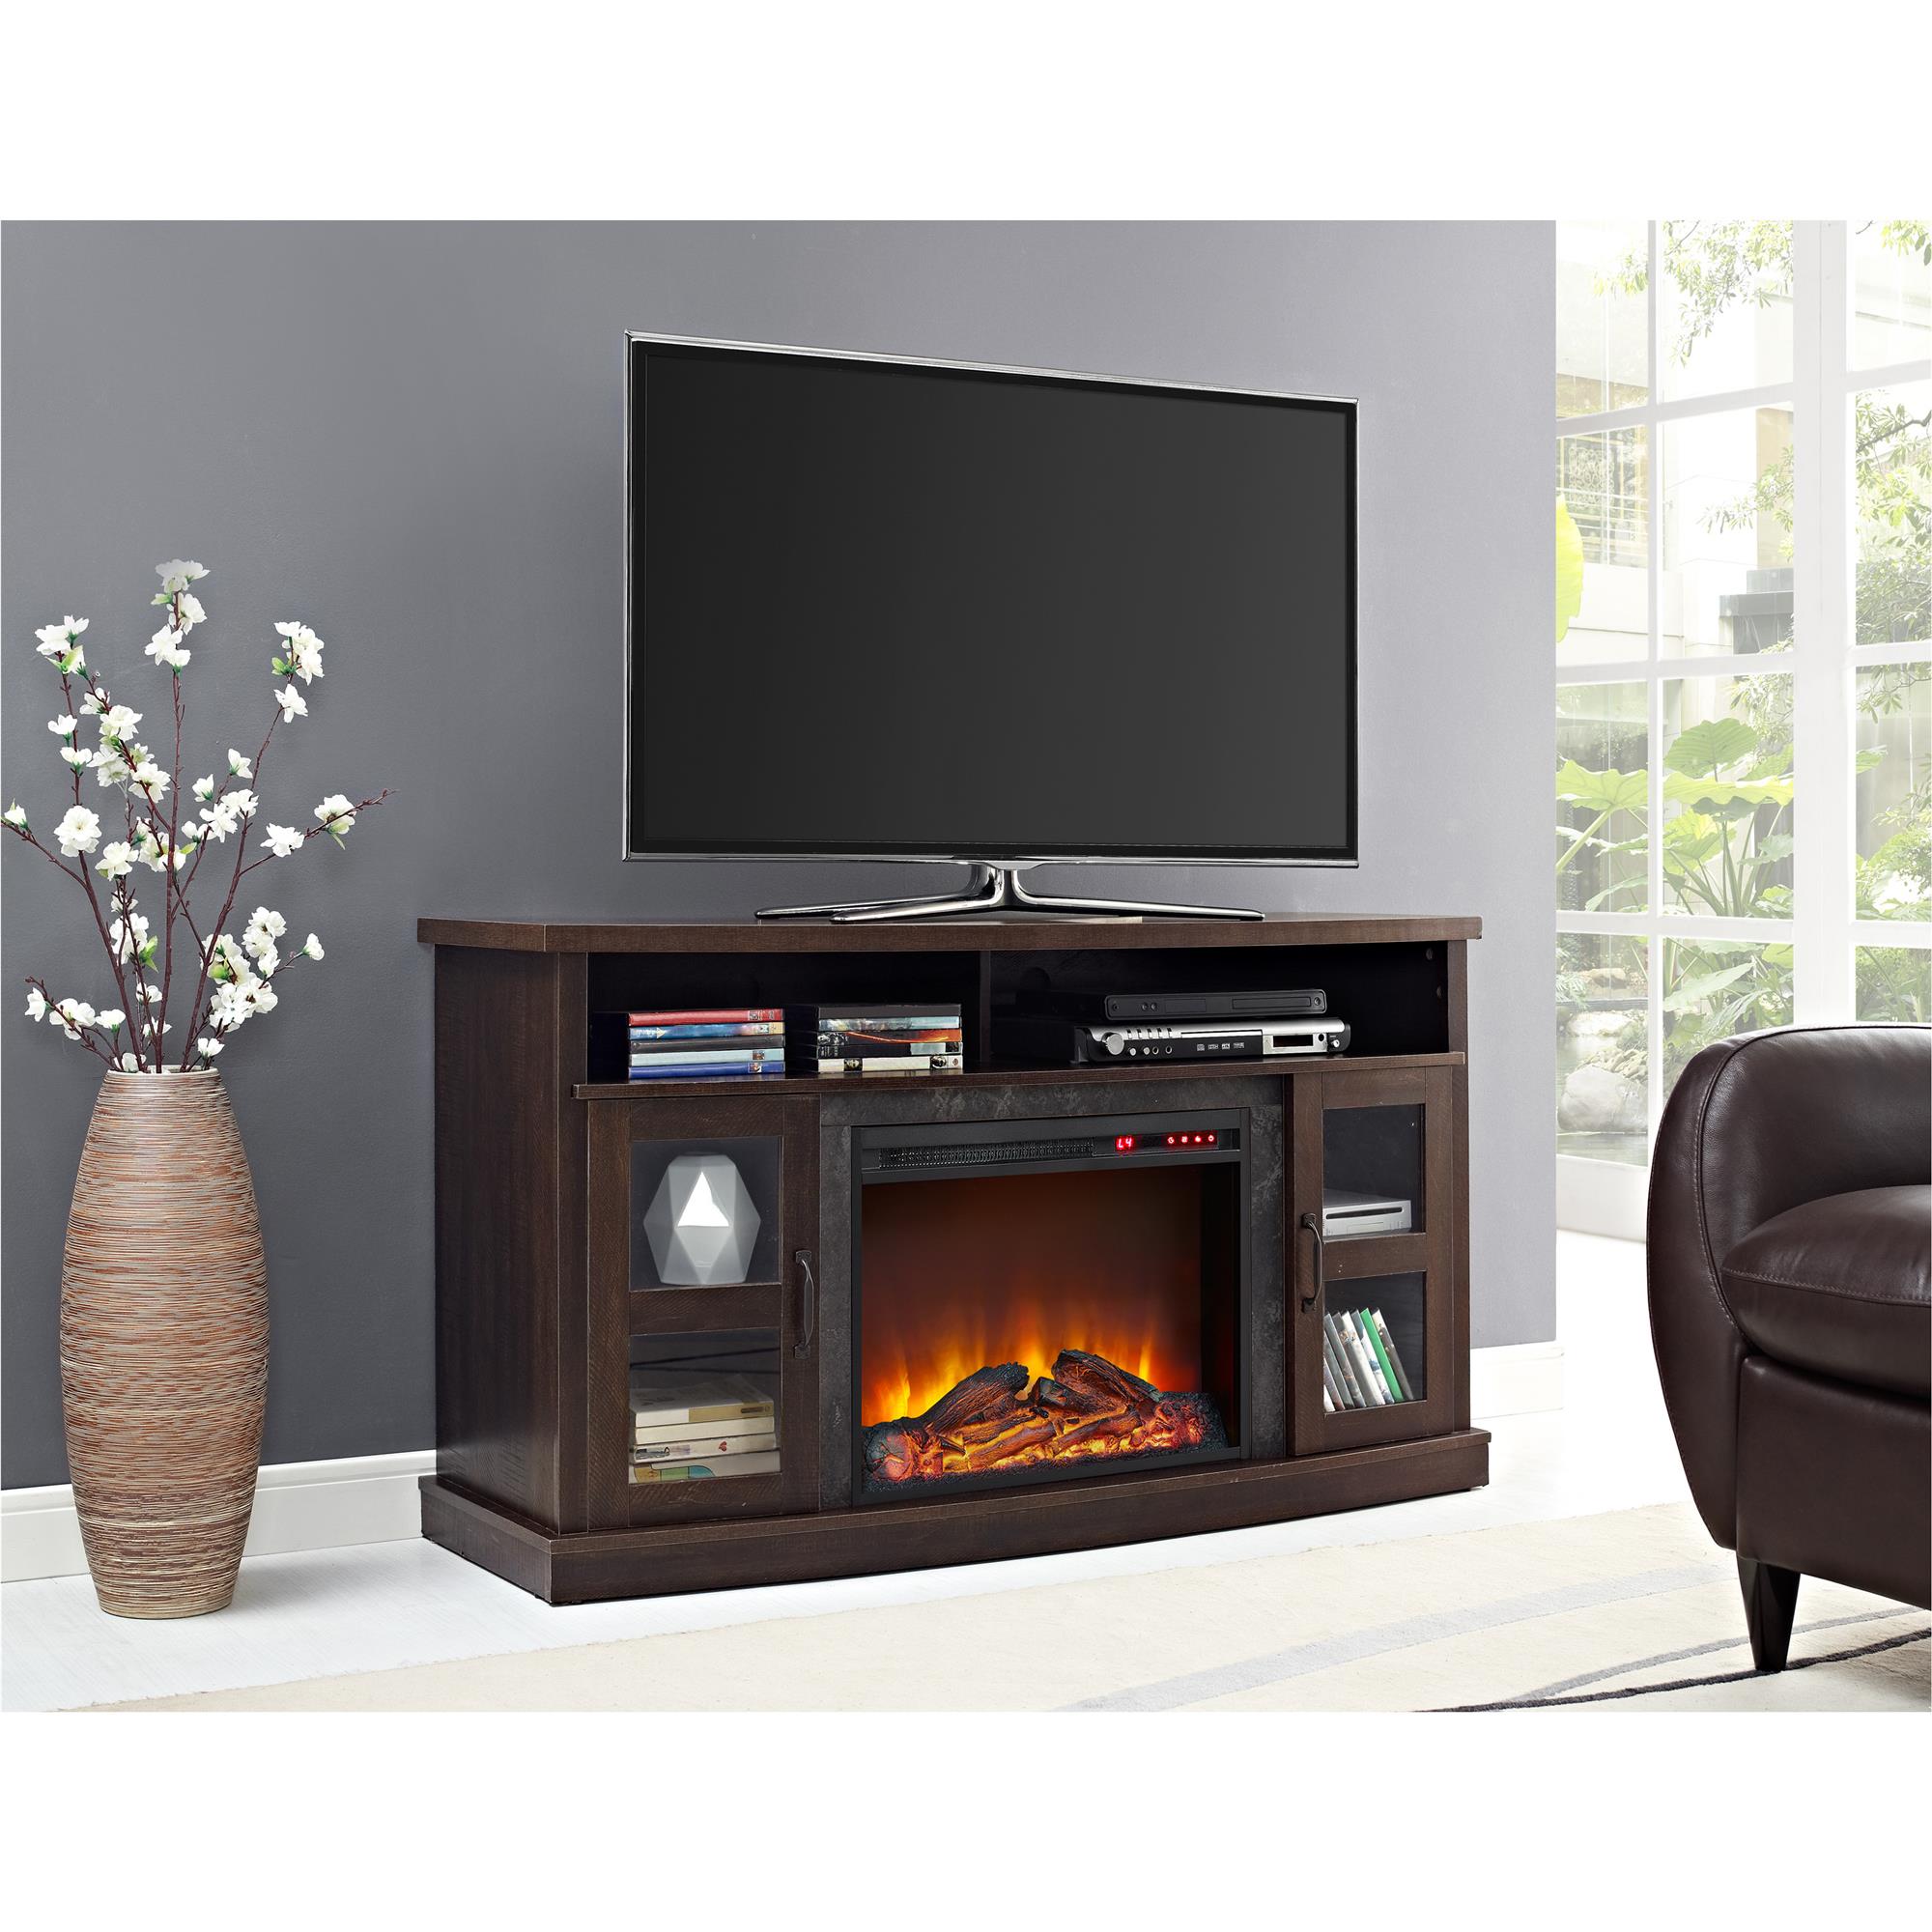 Espresso Fan Forced Electric Fireplace, Schuyler Tv Stand For Tvs Up To 60 With Electric Fireplace